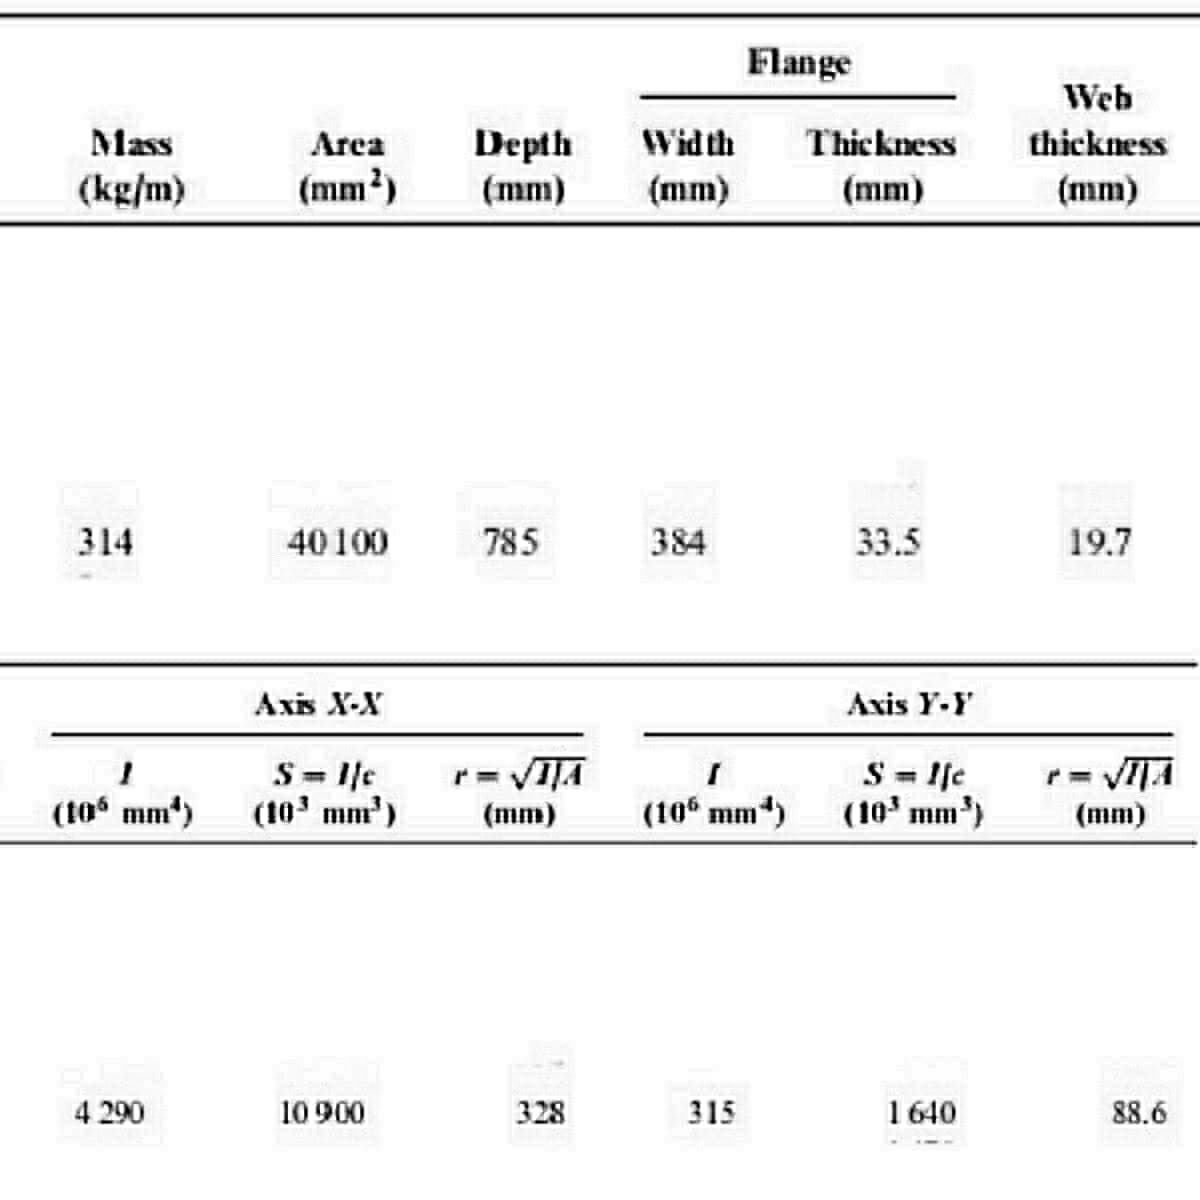 Flange
Web
Mass
Depth
(mm)
Area
Width
Thickness
thickness
(kg/m)
(mm²)
(mm)
(mm)
(mm)
314
40100
785
384
33.5
19.7
Axis X-X
Axis Y-Y
S = I/c
(10' mm')
S lfe
(10' mm')
r= VIJA
(to mm*)
(mm)
(10 mm)
(mm)
4 290
10 900
328
315
1640
88.6
